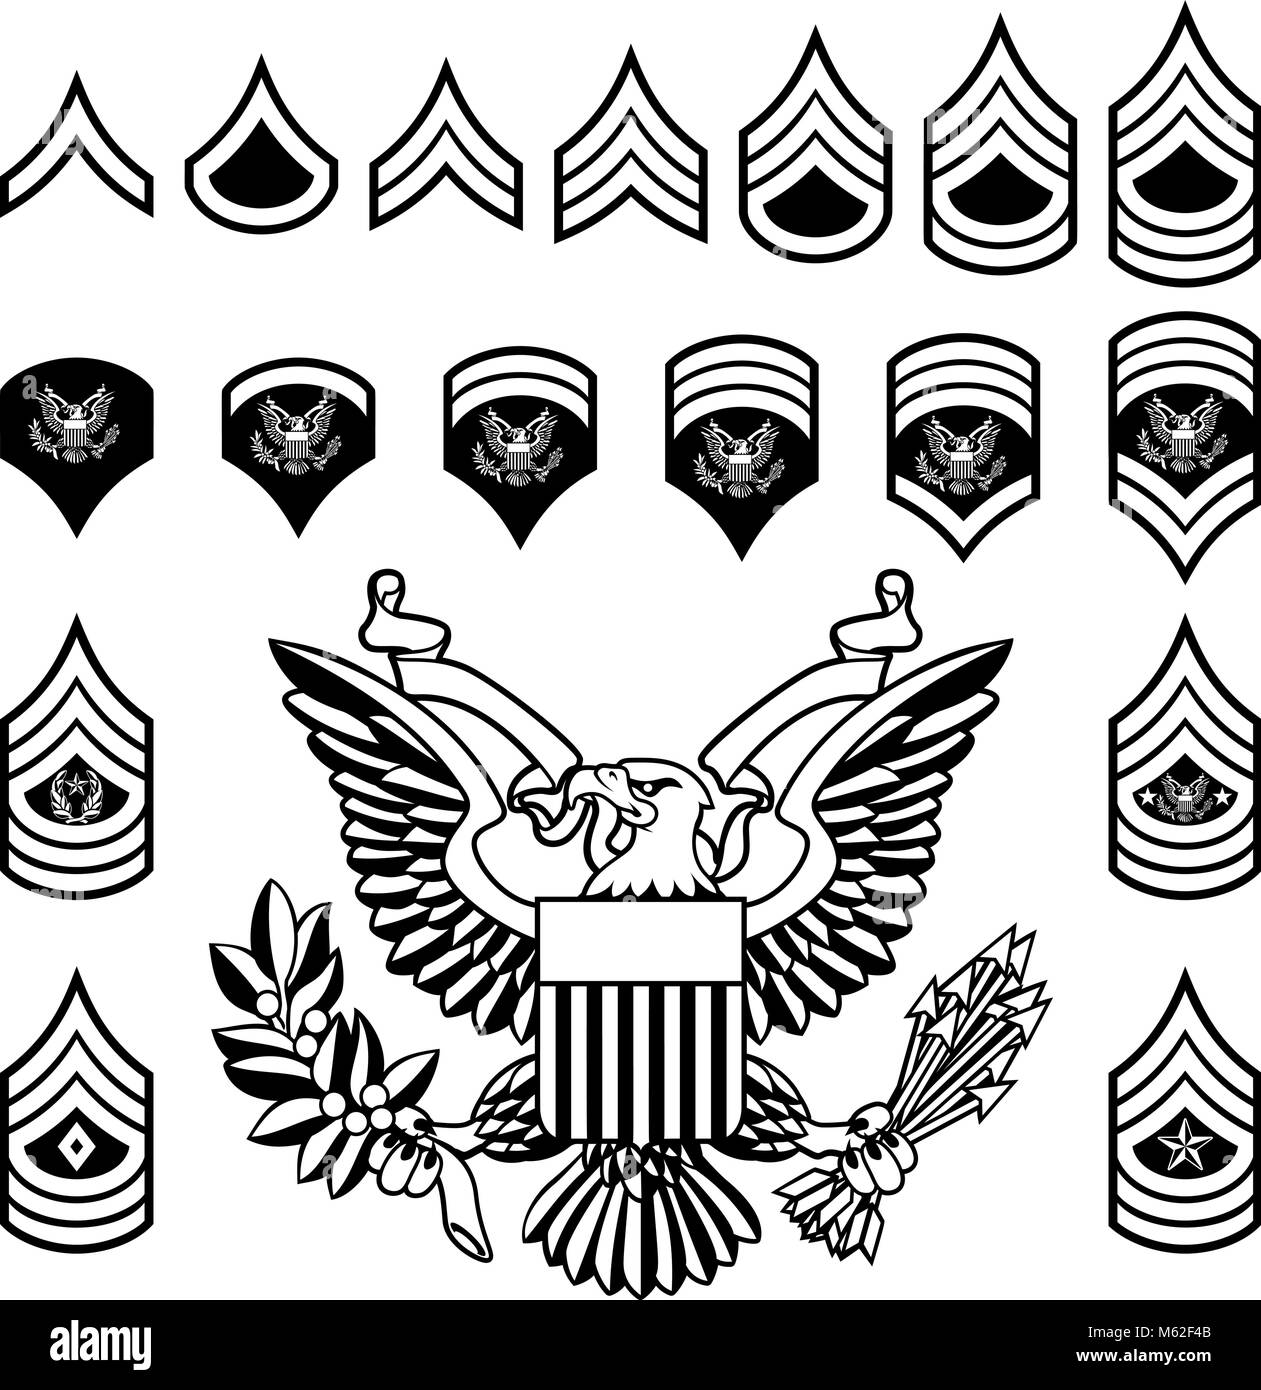 Armee militärische Rangabzeichen Stock Vektor